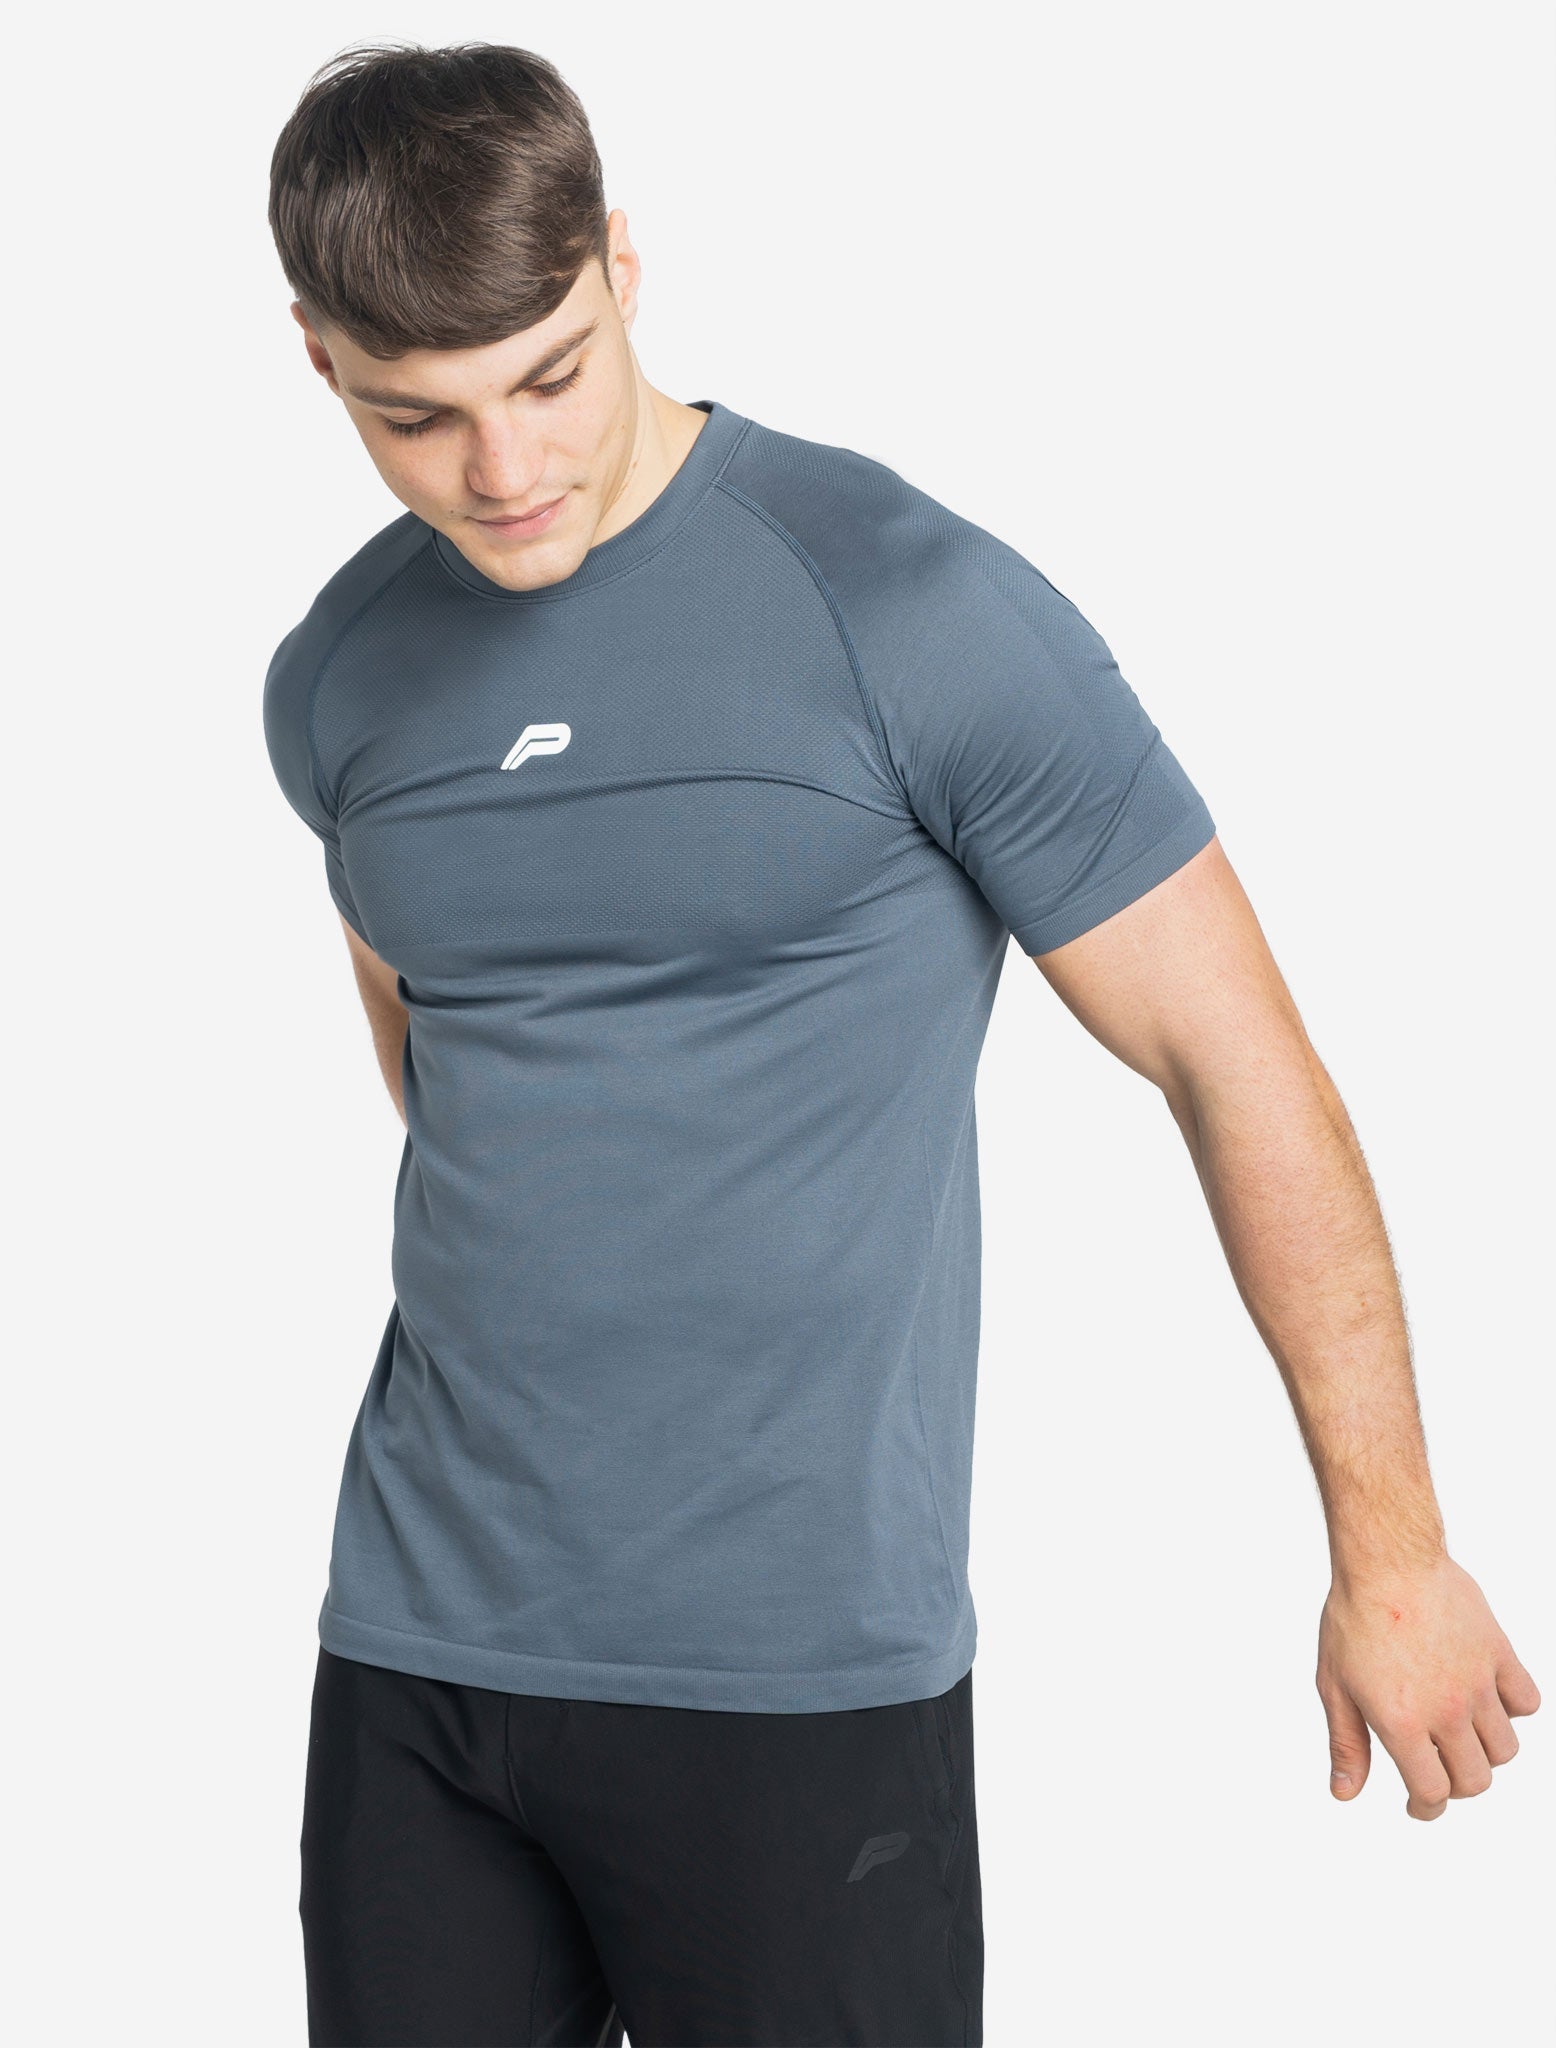 Seamless T-shirt / Deep Blue Pursue Fitness 4